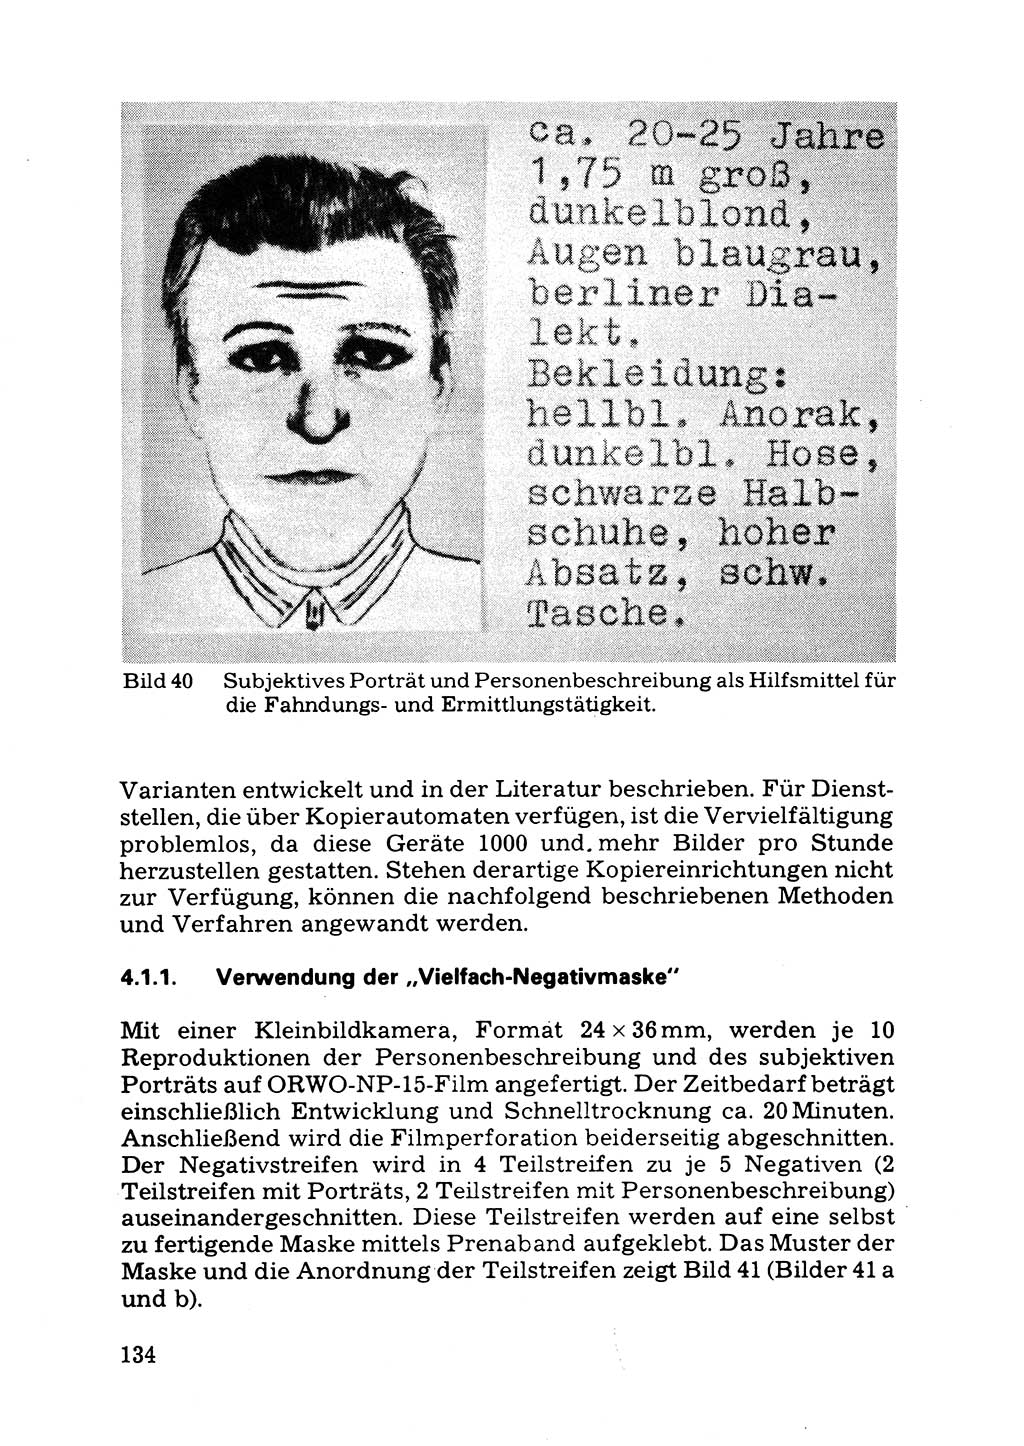 Das subjektive Porträt [Deutsche Demokratische Republik (DDR)] 1981, Seite 134 (Subj. Port. DDR 1981, S. 134)